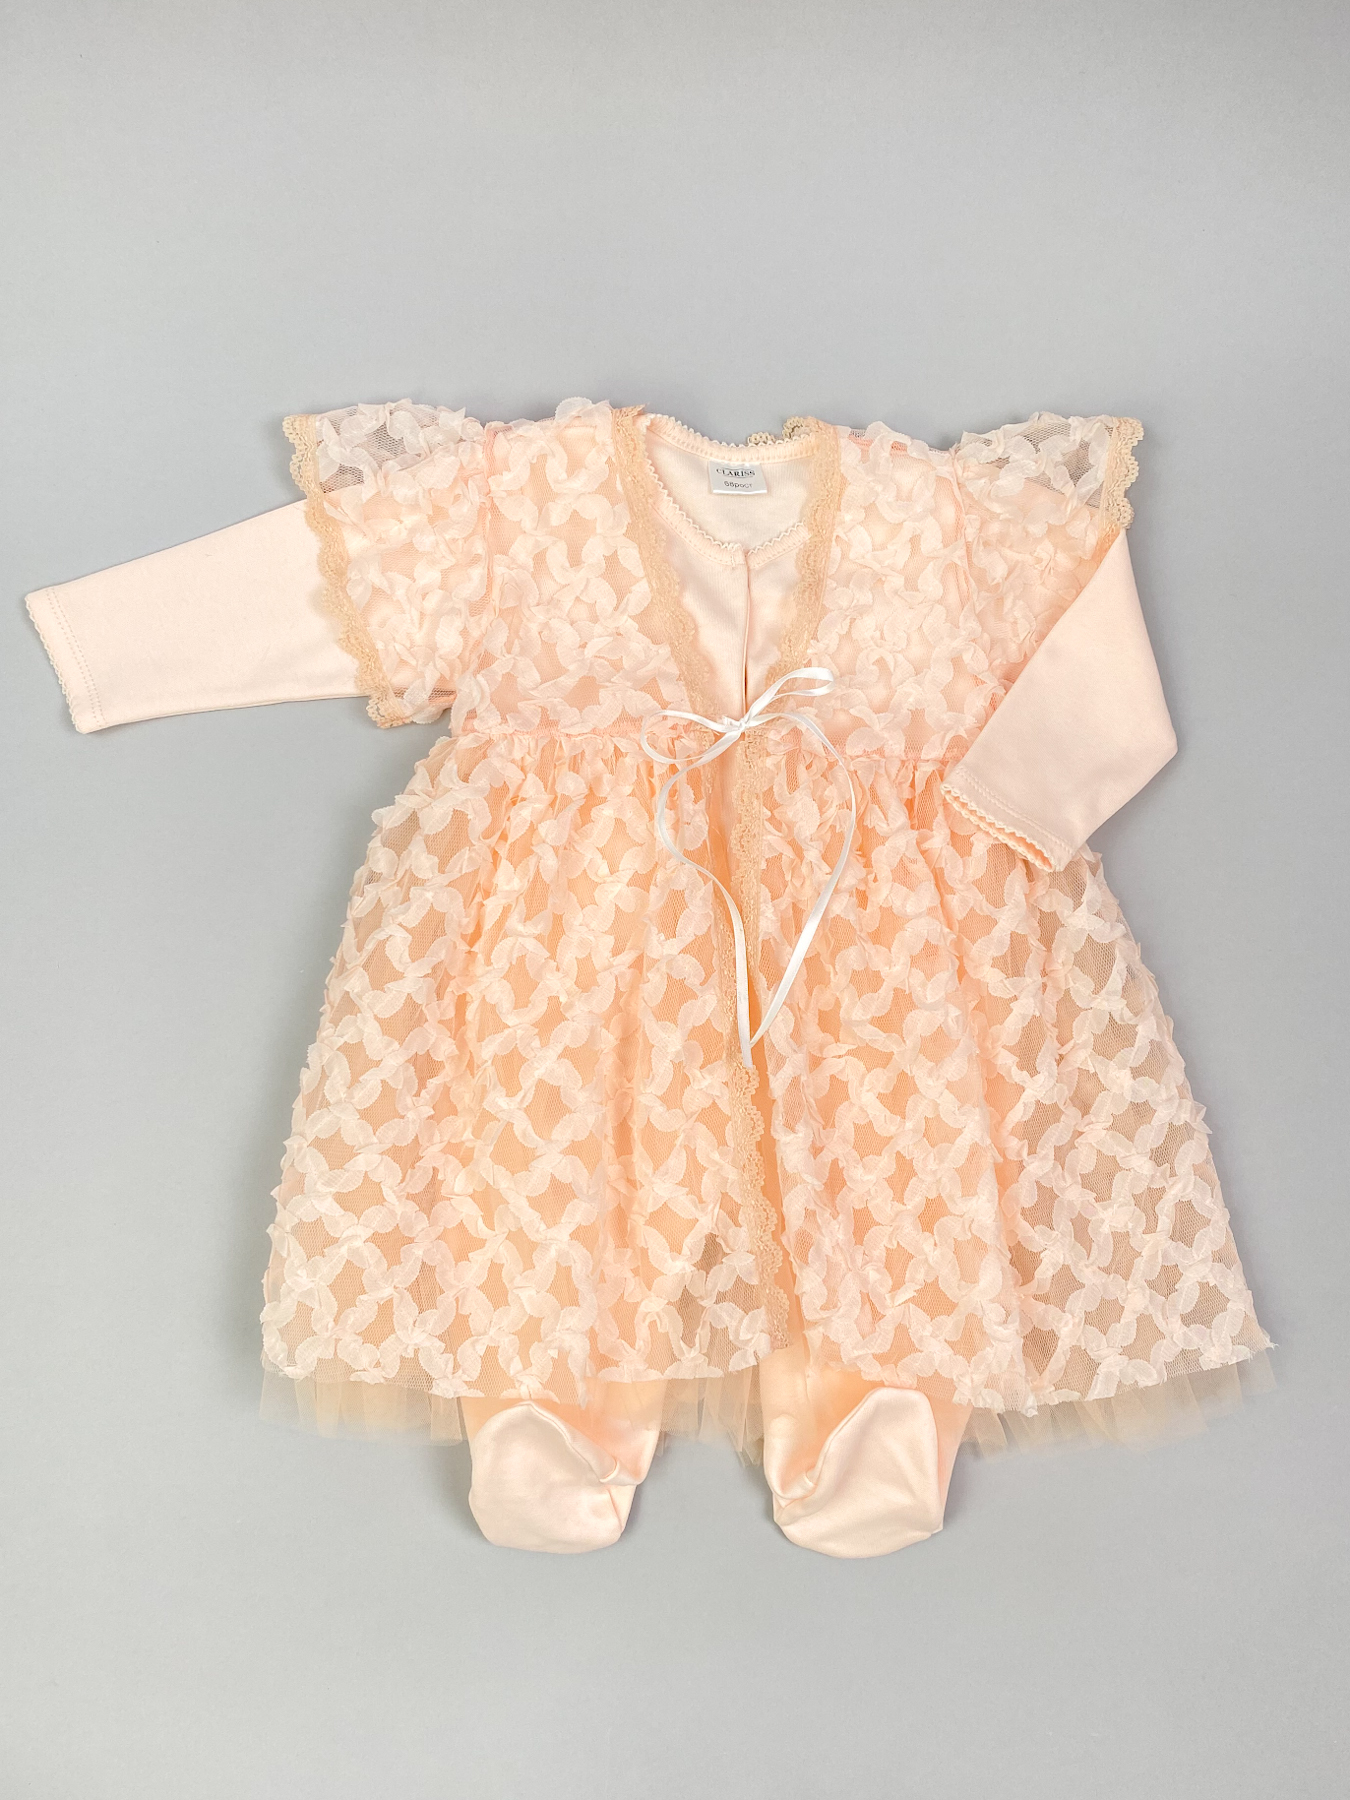 Комплект одежды детский  Clariss Ажурная клетка, оранжевый, 62